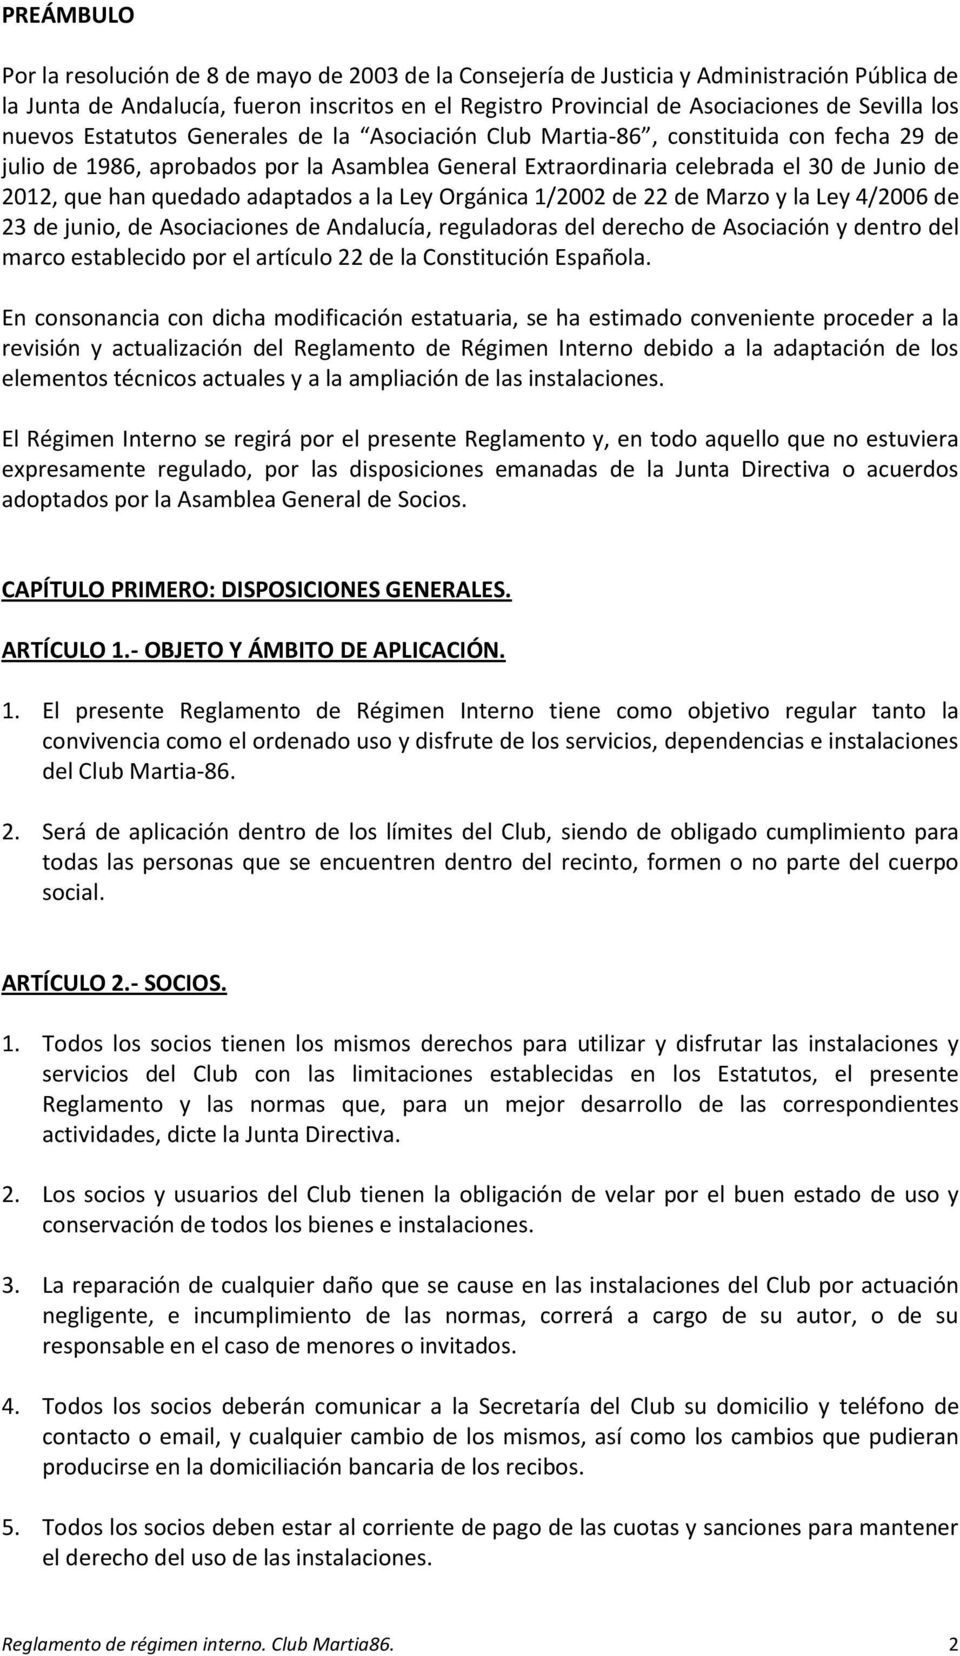 quedado adaptados a la Ley Orgánica 1/2002 de 22 de Marzo y la Ley 4/2006 de 23 de junio, de Asociaciones de Andalucía, reguladoras del derecho de Asociación y dentro del marco establecido por el